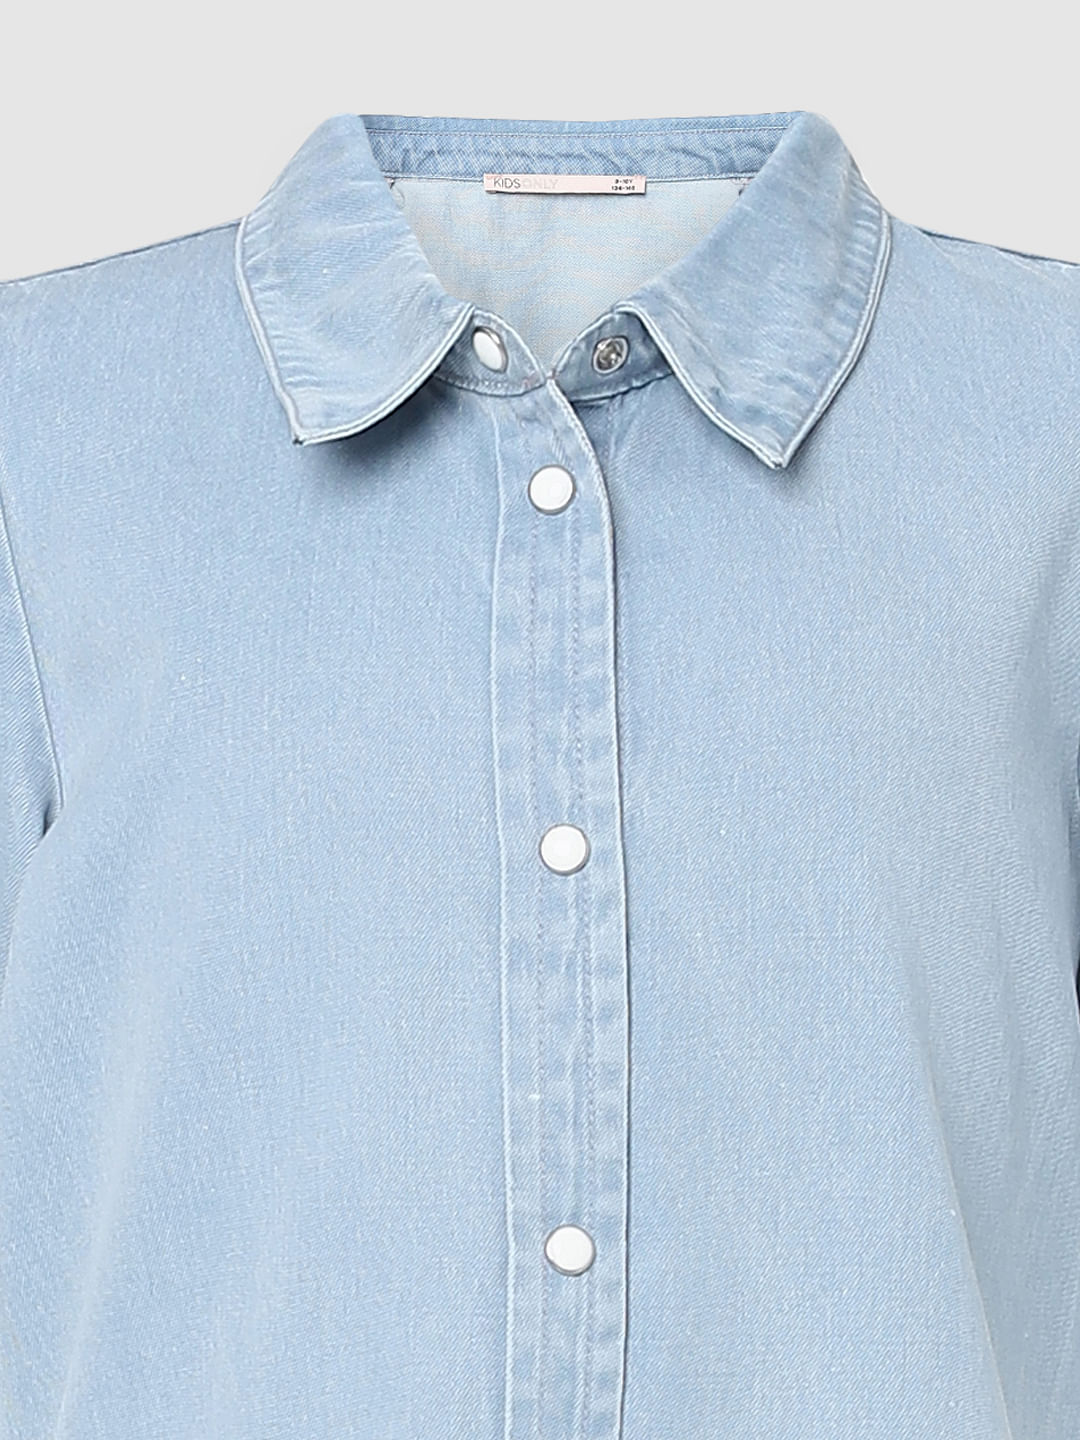 Cotton Denim Shirt | Ralph Lauren | Childrenswear boys, Kids outfits,  Childrenswear